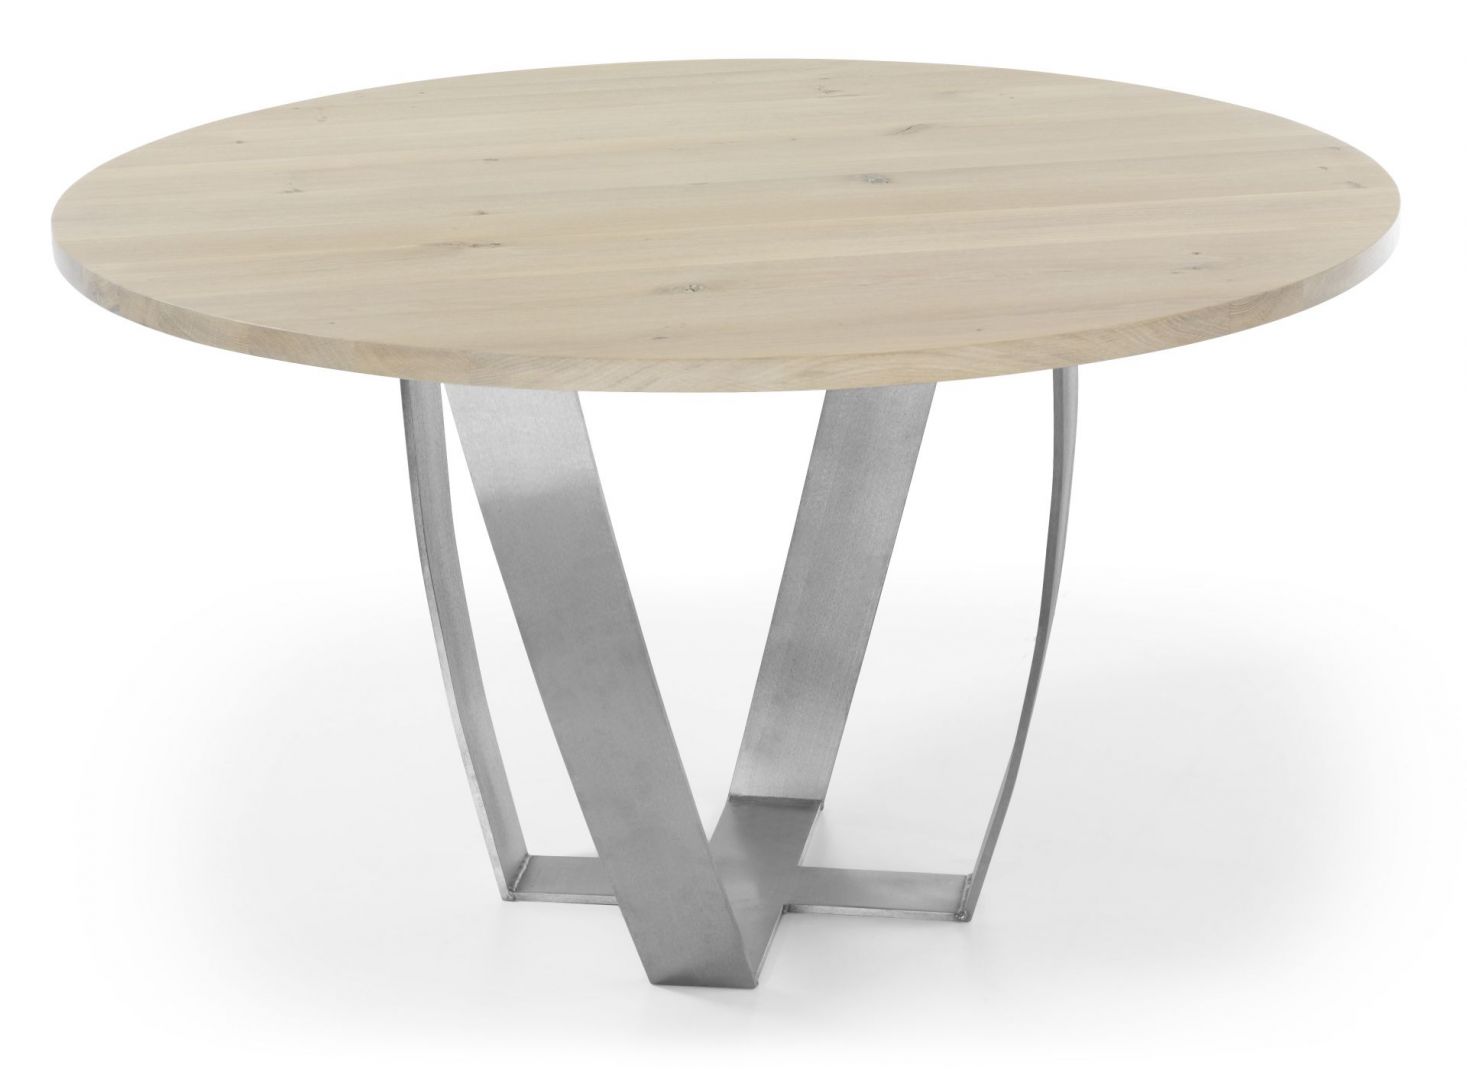 Okrągły stół Sotile, wykonany z drzewa dębowego, o delikatnym ubarwieniu. Zaokrąglone nogi będące podstawą stołu, wykonane są z efektownego matowego metalu. Fot. Congrazio